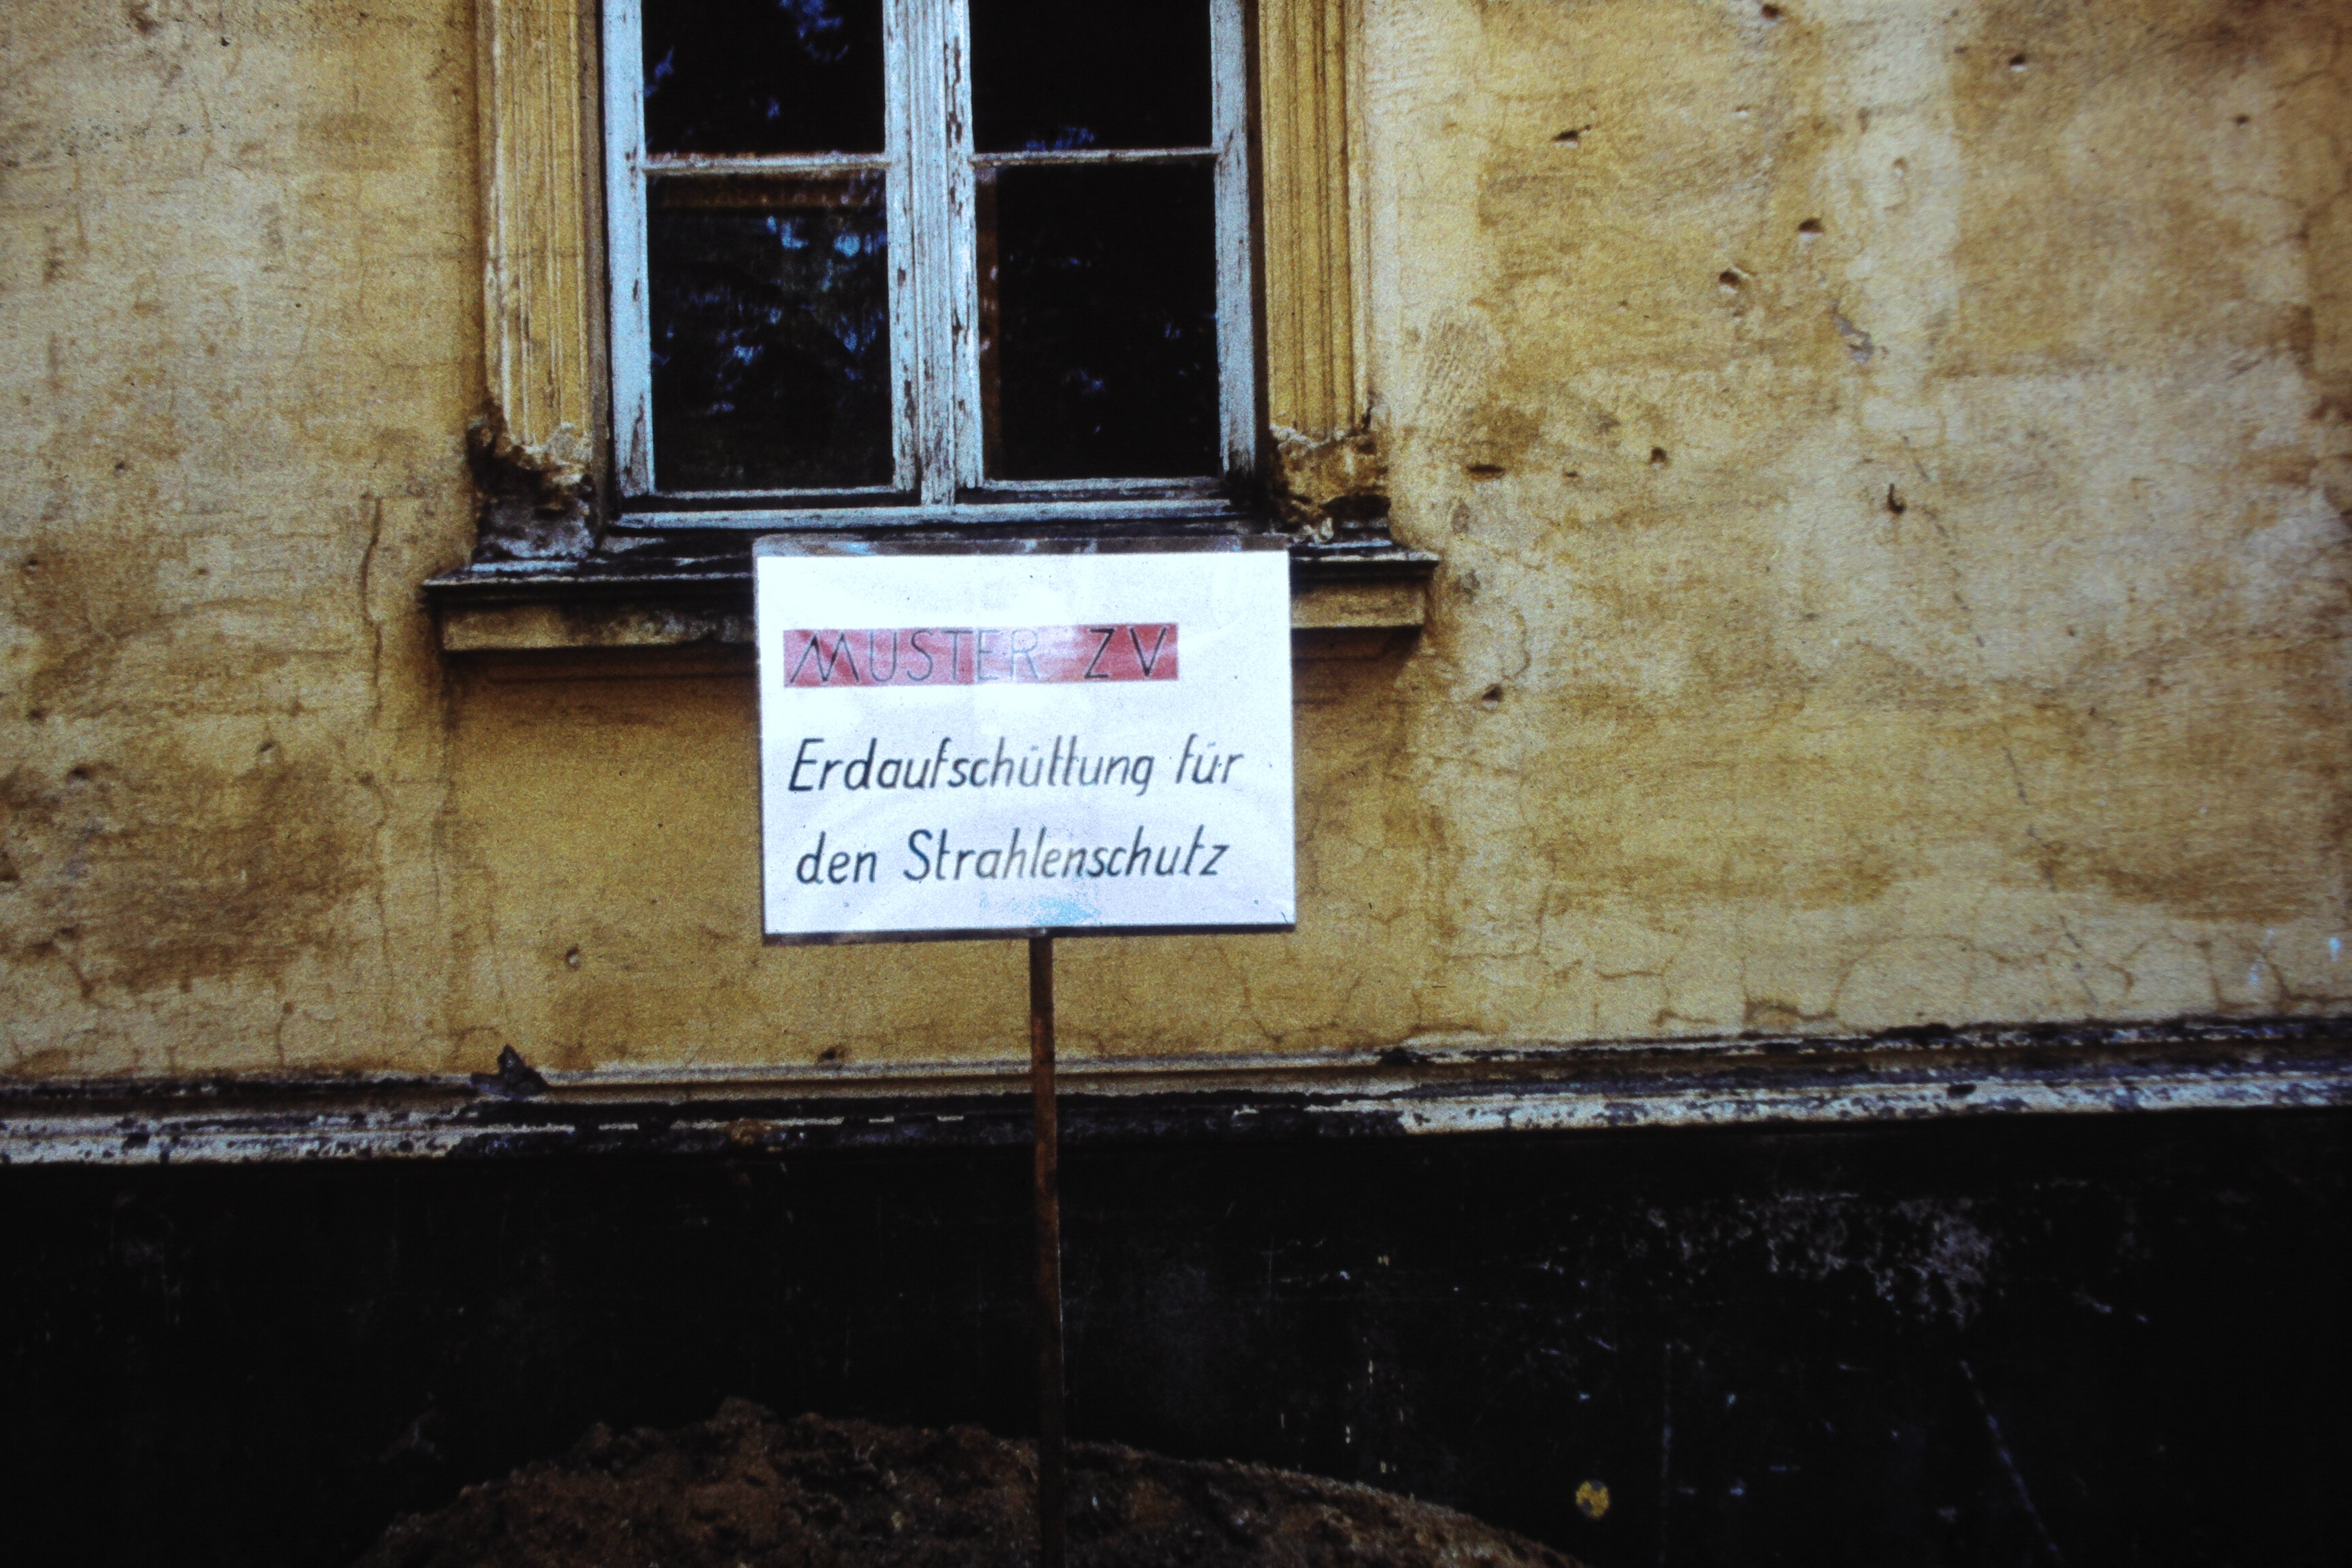 Atomschlagübung "Dosse 83": Schild "Muster ZV Erdaufschüttung für den Strahlenschutz" (DDR Geschichtsmuseum im Dokumentationszentrum Perleberg CC BY-SA)